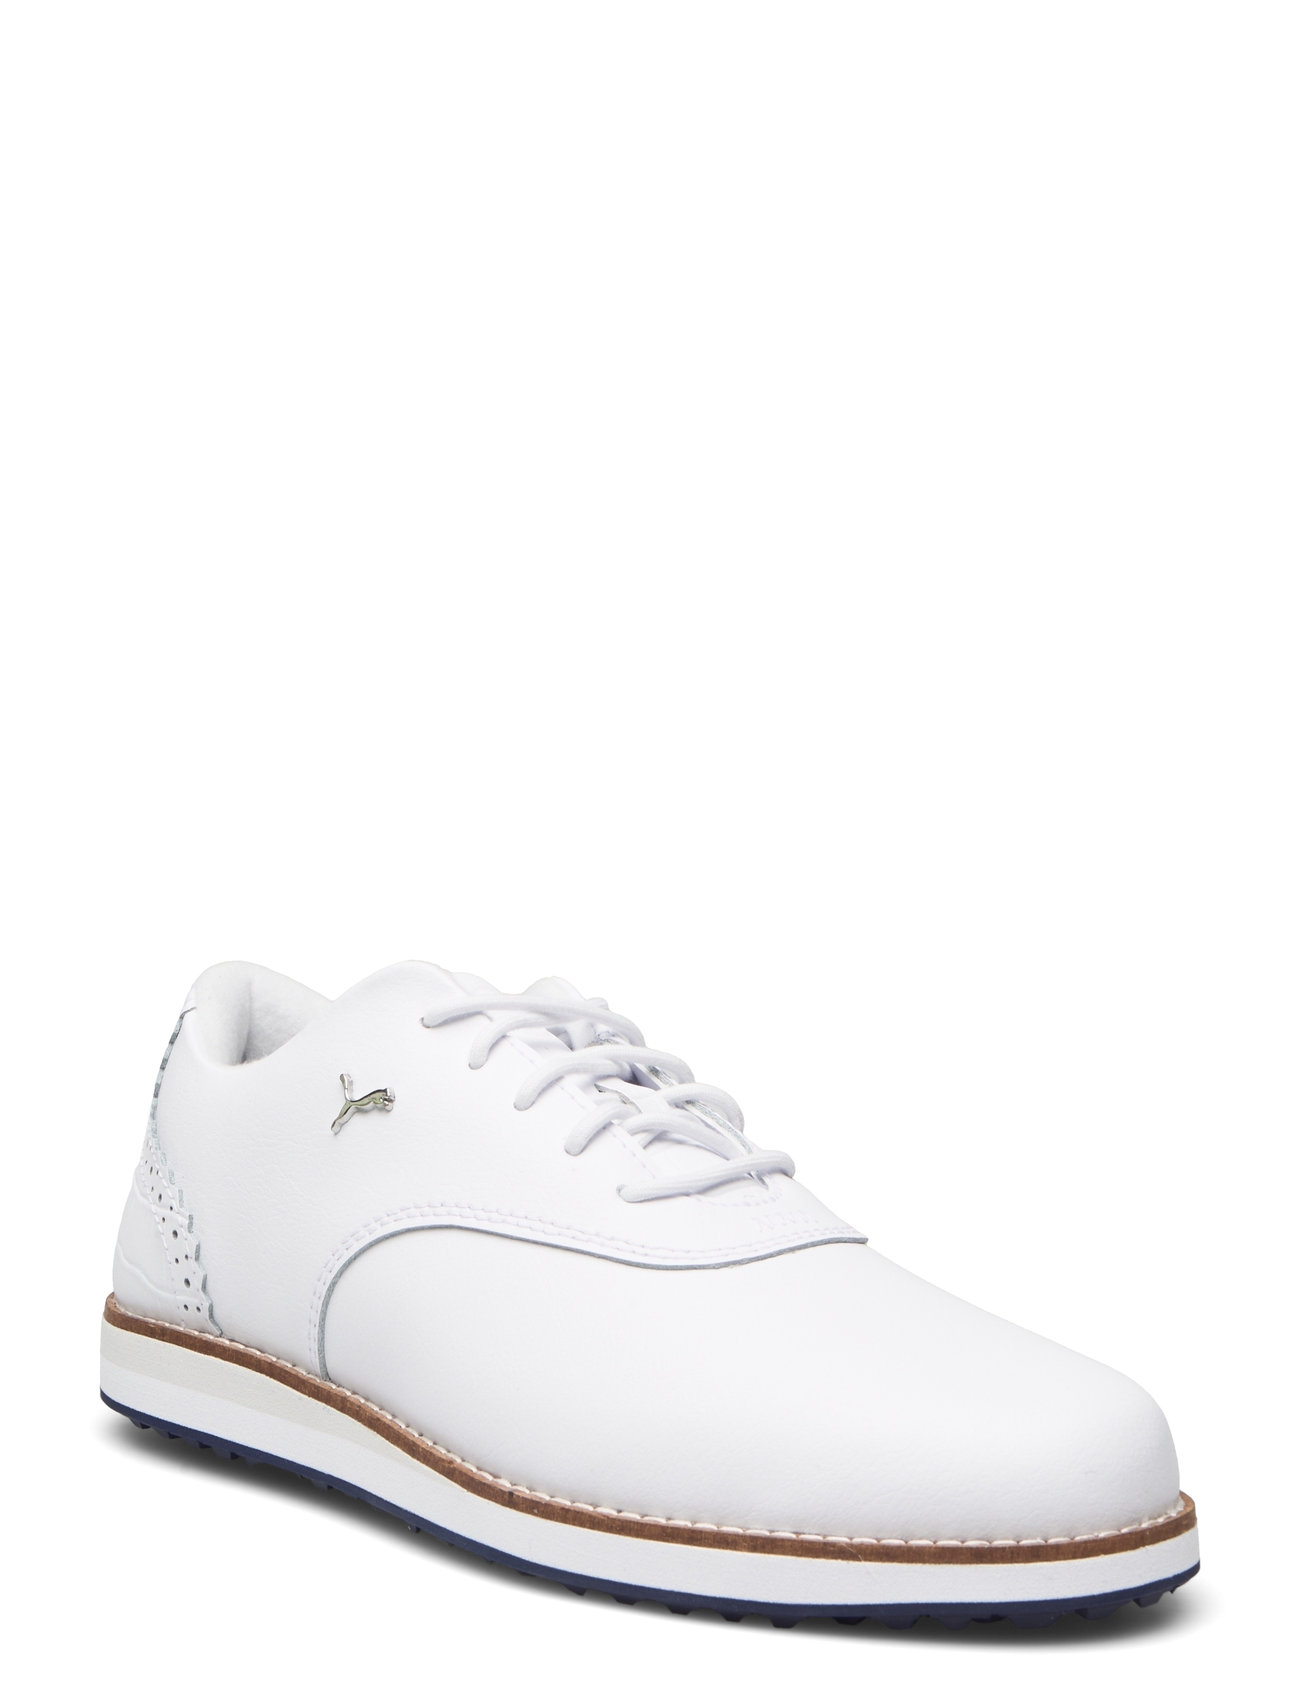 Puma Avant Wmns Shoes Sport Shoes Golf Shoes White PUMA Golf